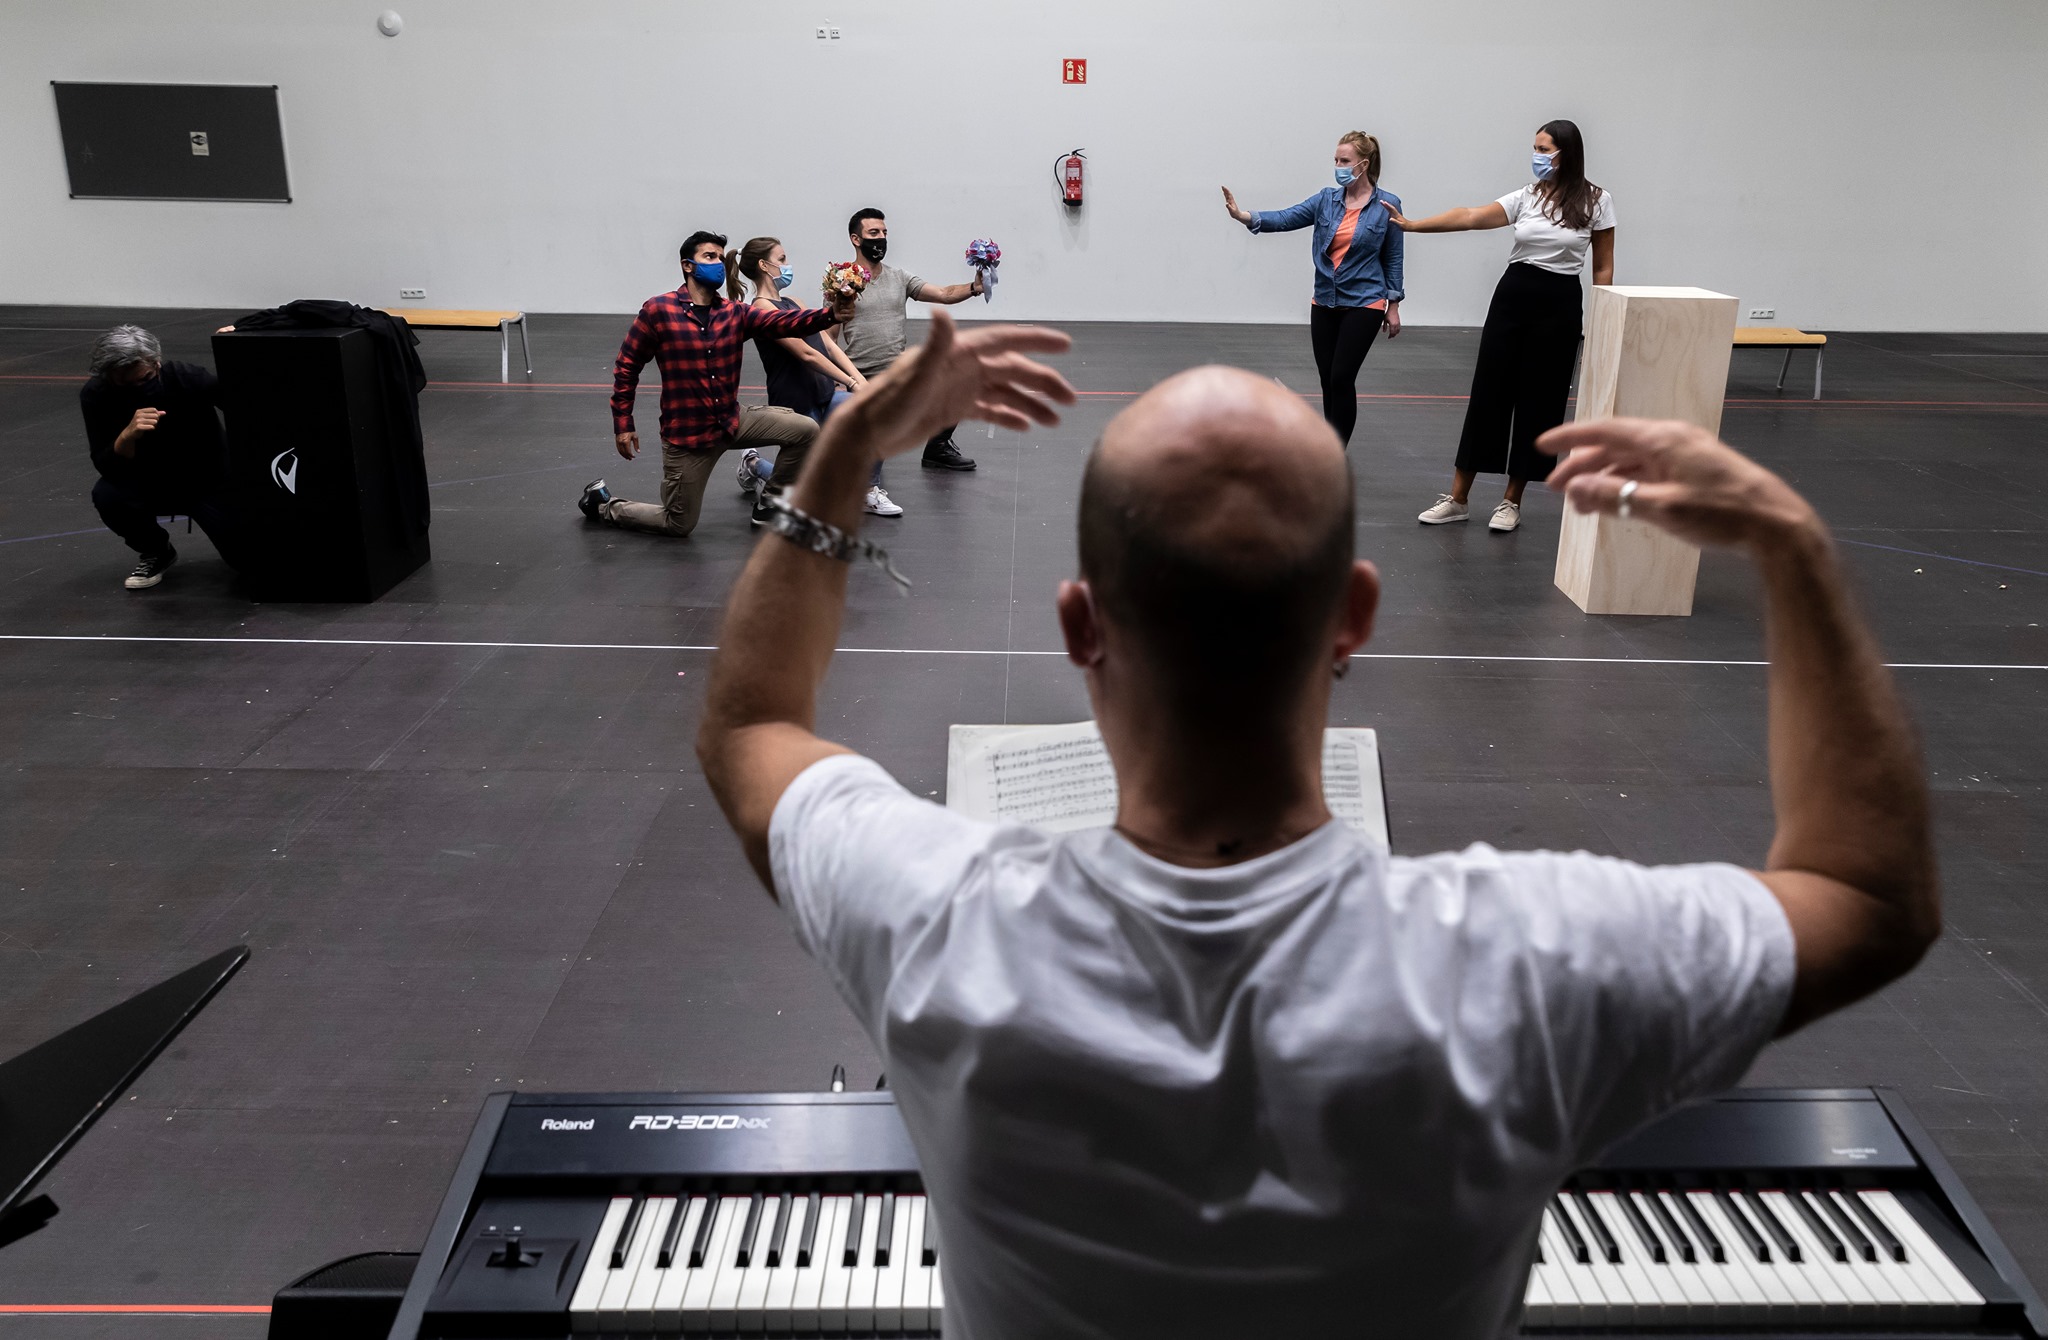 Les Arts reúne a las jóvenes estrellas del repertorio mozartiano en el montaje de ‘Così fan tutte’ que inaugura la temporada 2020-2021